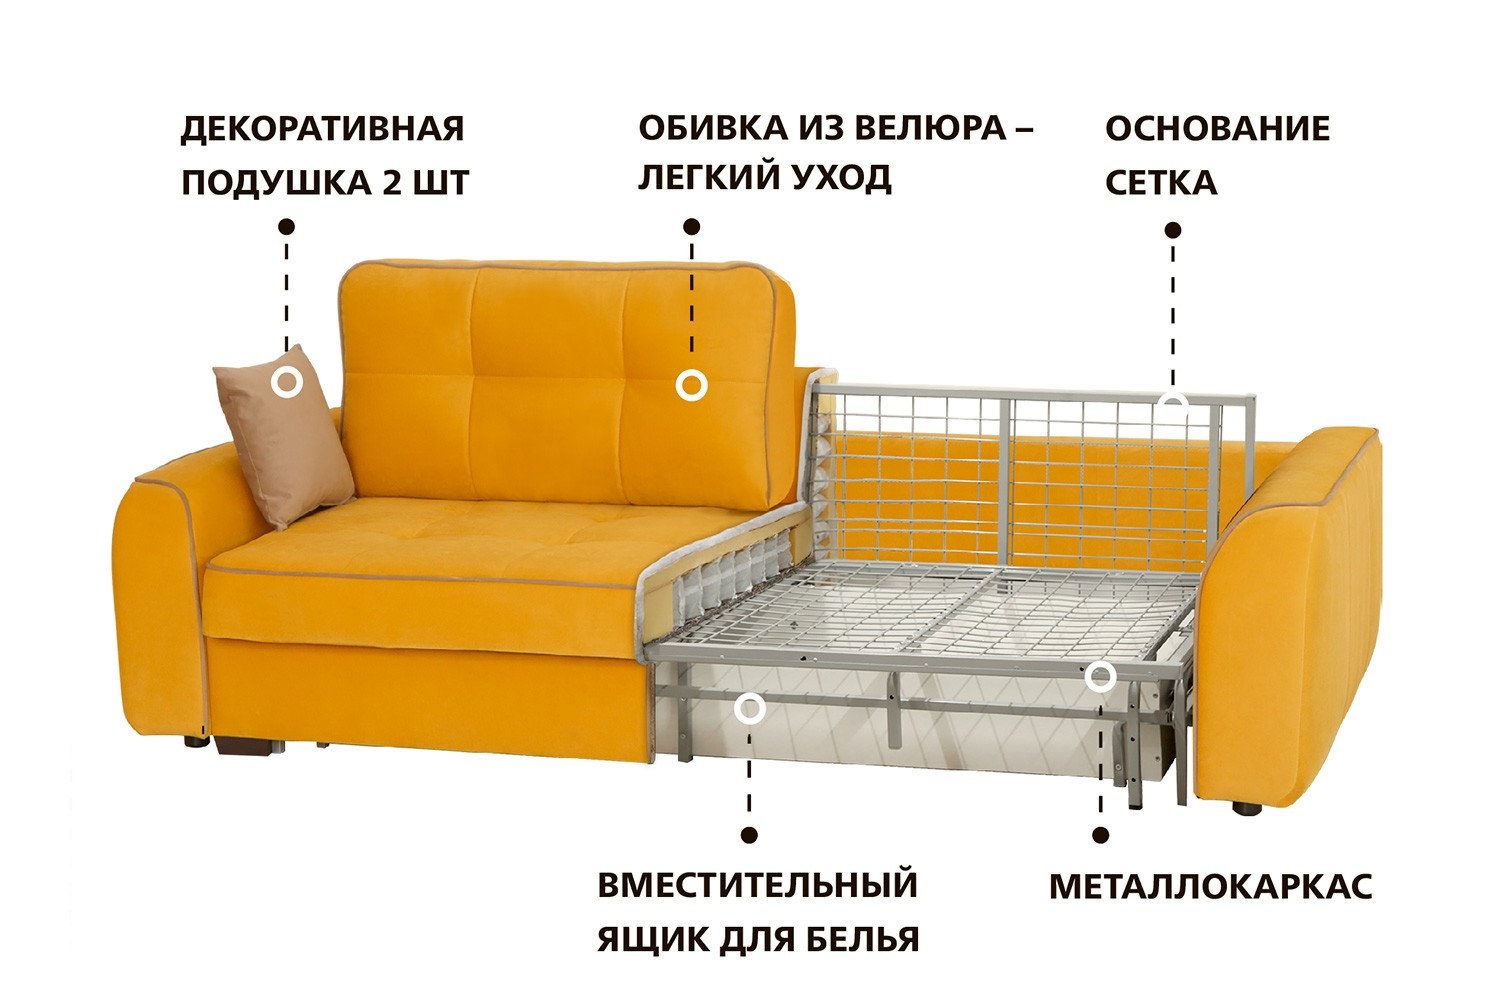 Механизм раскладывания дивана аккордеон схема